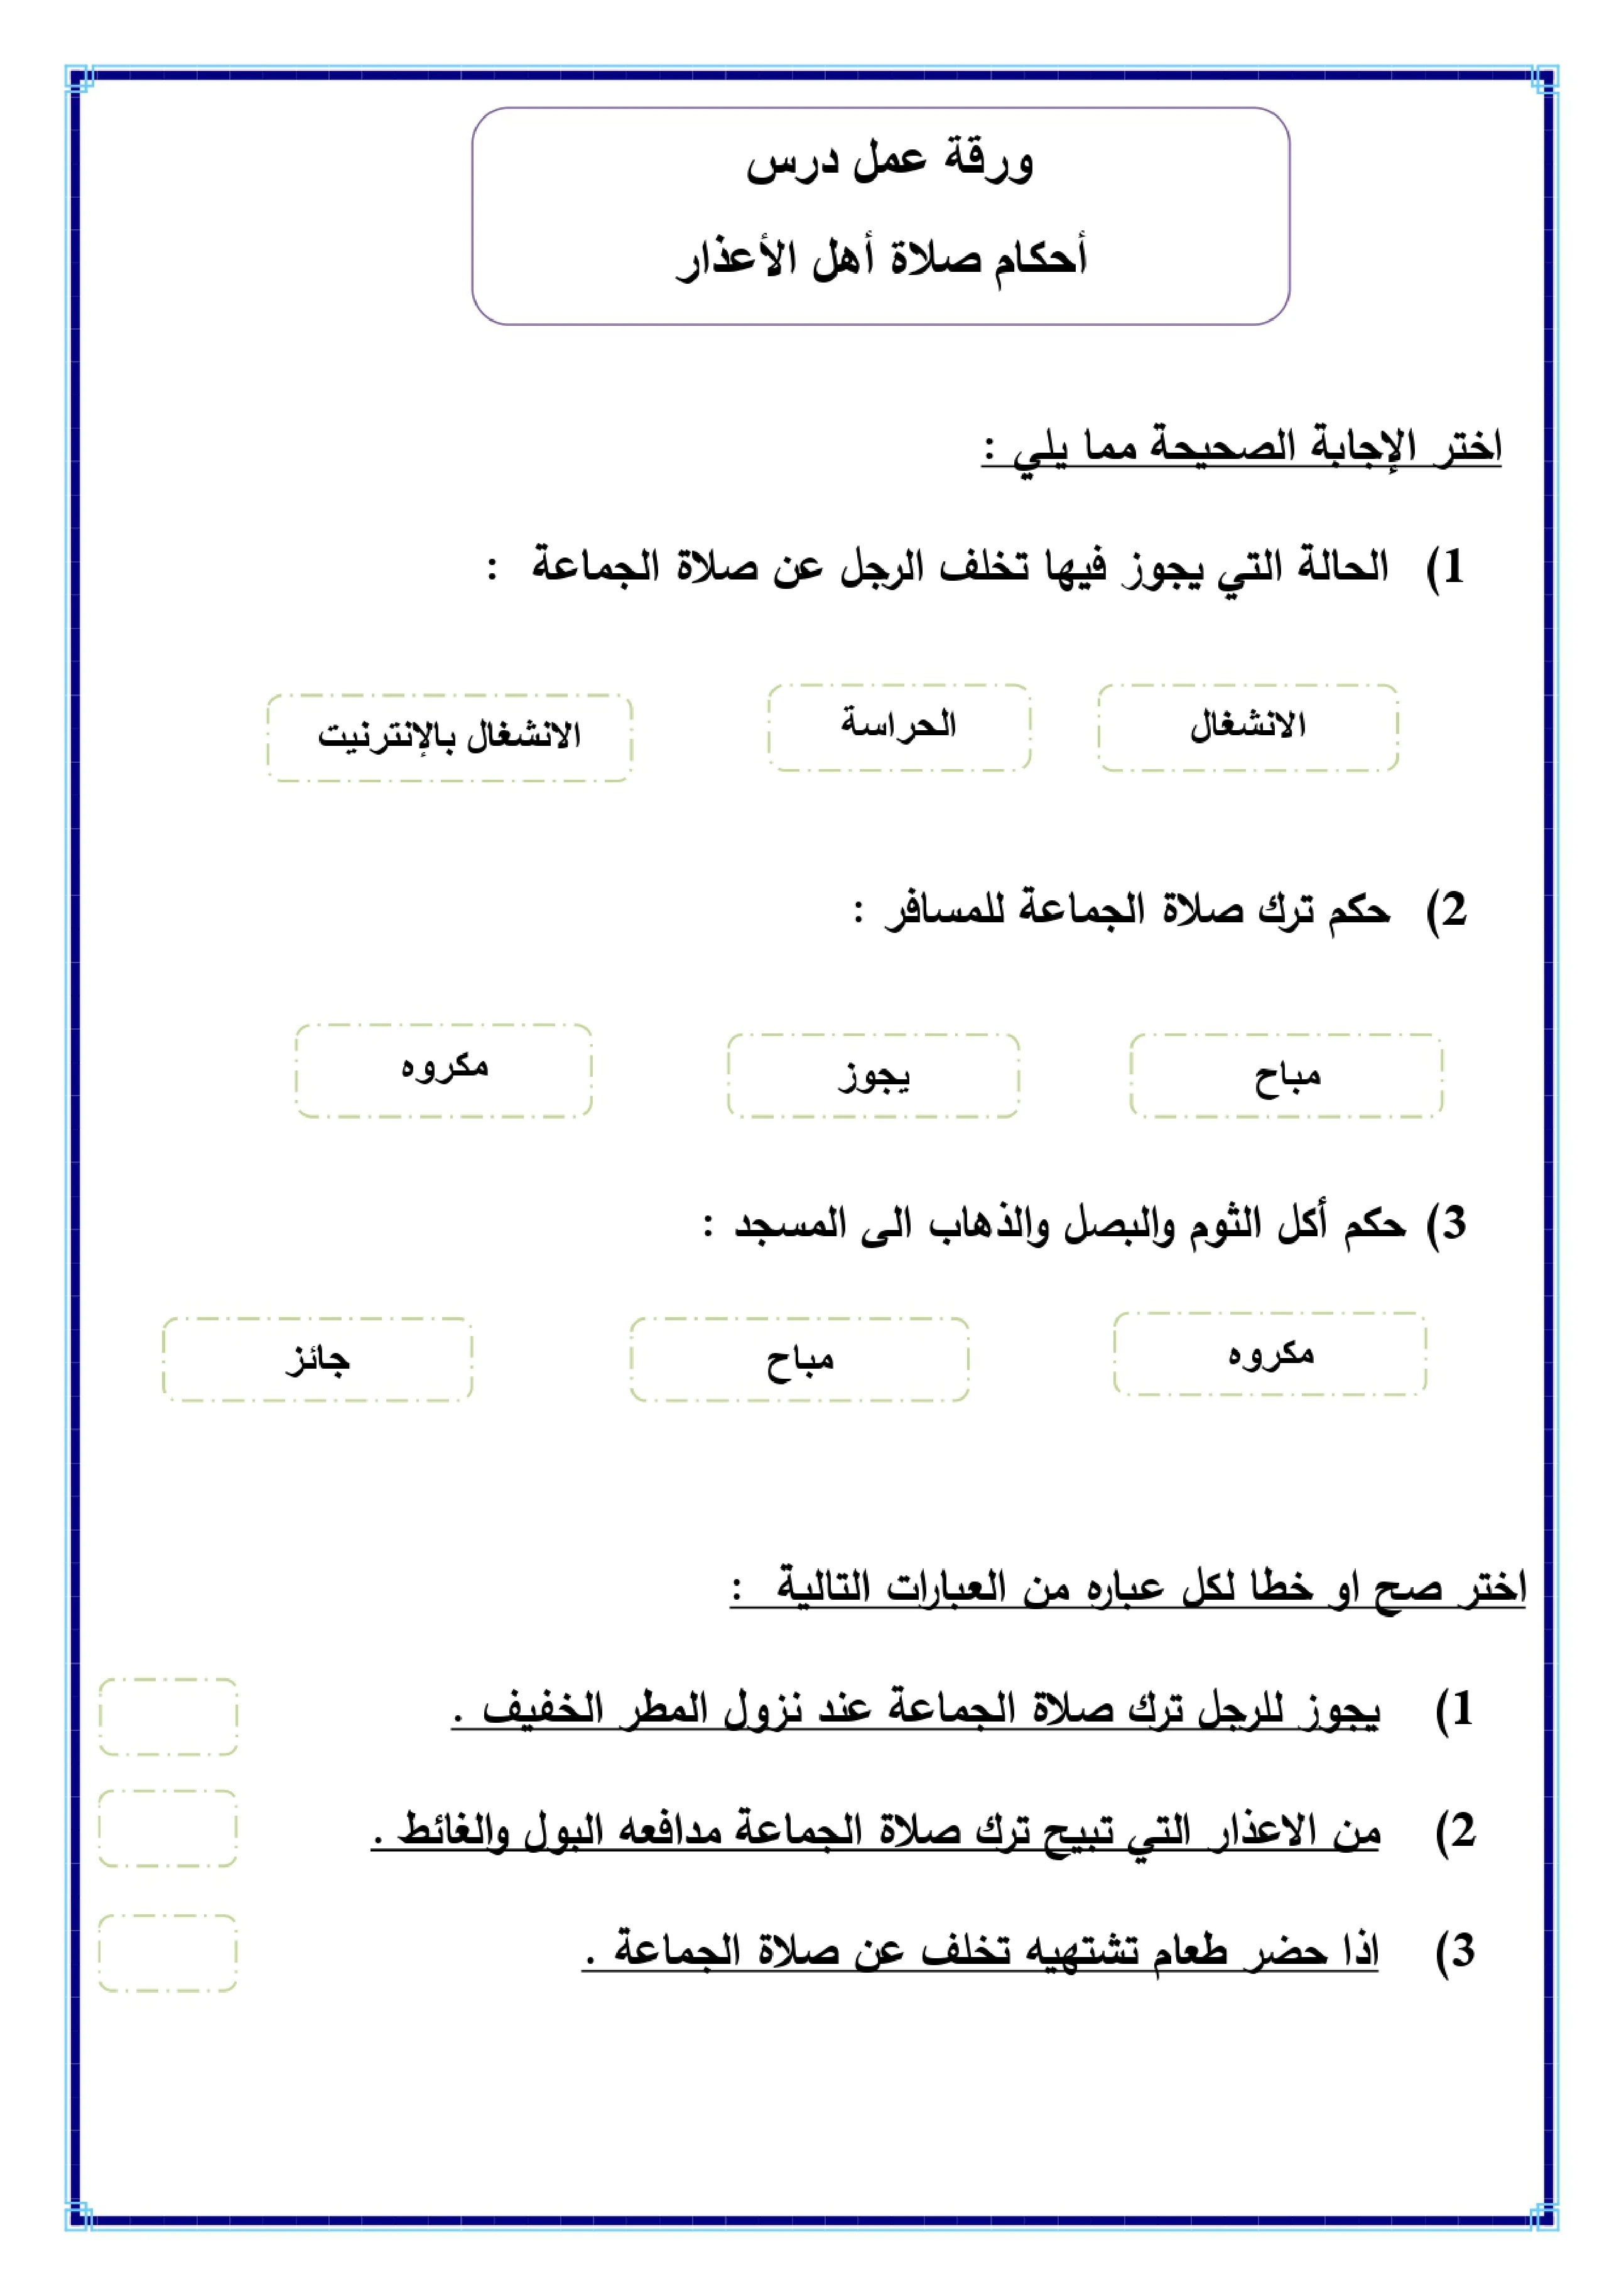 أوراق عمل لمادة التربية الإسلامية الصف الخامس الابتدائي الفصل الدراسي الثالث pdf تحميل مباشر مجاني